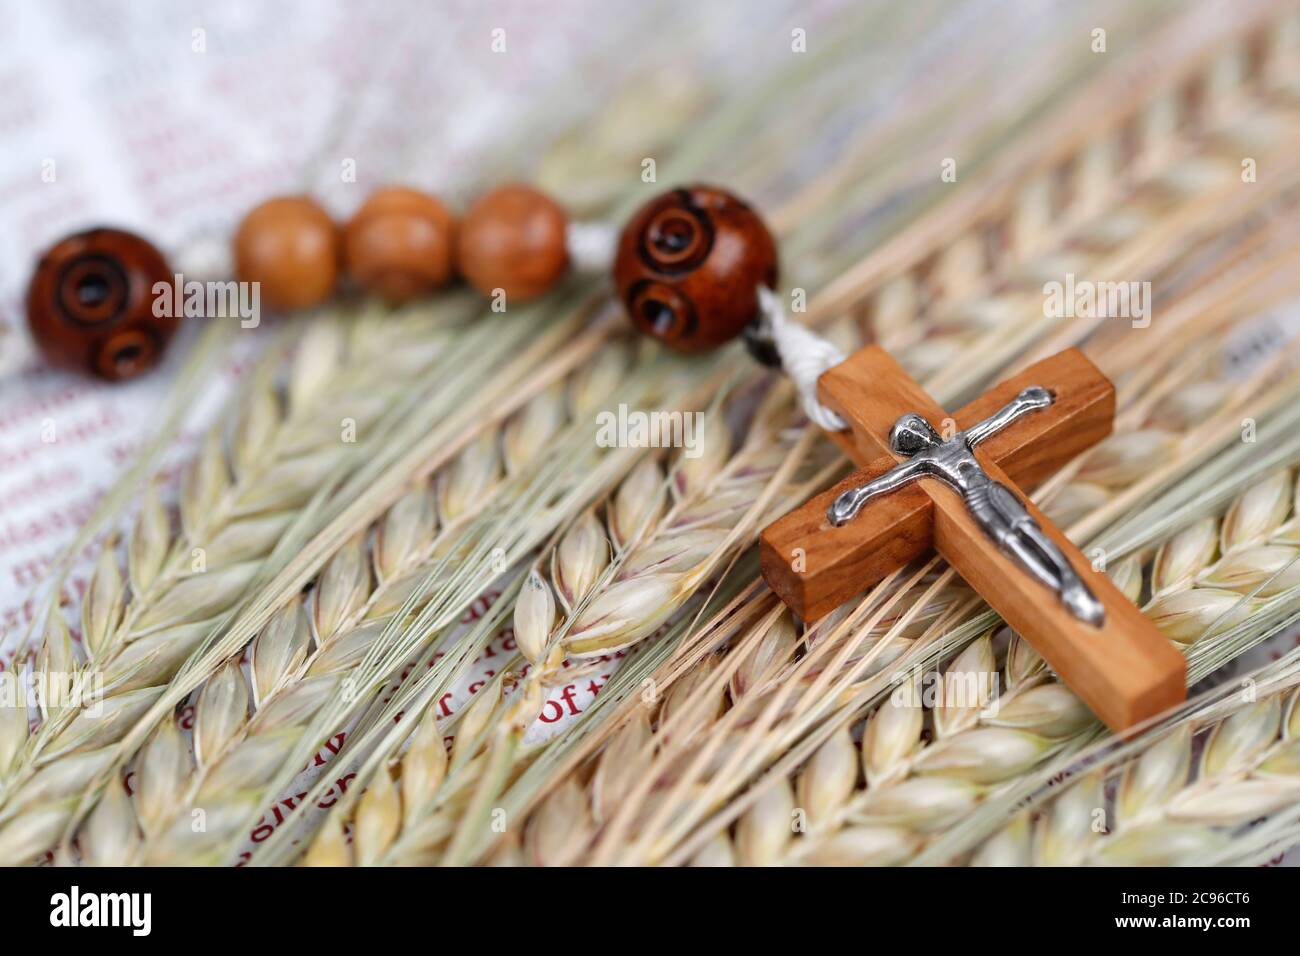 Croix chrétienne, Bible et oreilles de blé comme symbole de la nourriture spirituelle et physique. France. Banque D'Images